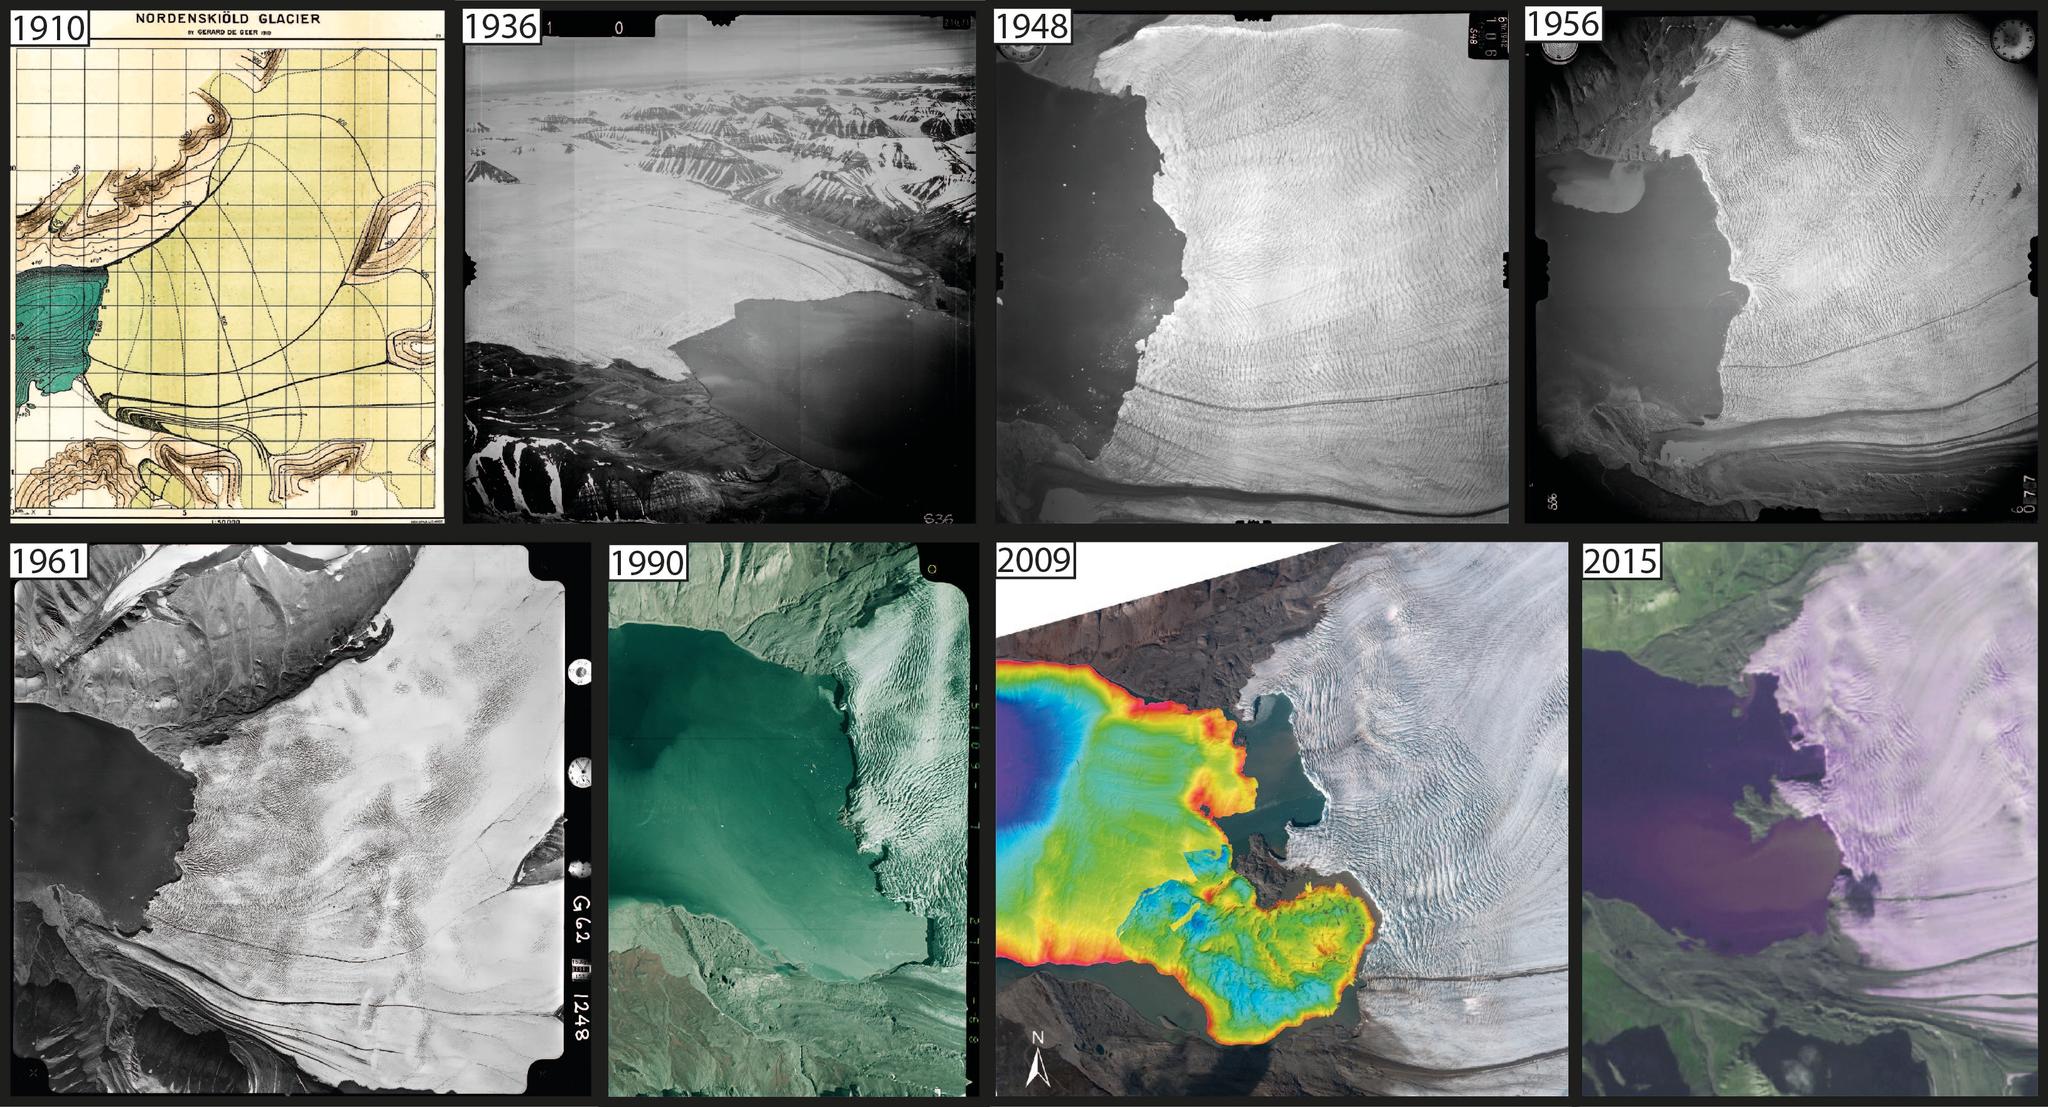 Historisk og nyere materiale dokumenterer isbreens tilbaketrekning. Fra 1896 til 2015 har Nordenskiöldbreen trukket seg 2,3 – 3,5 kilometer tilbake.